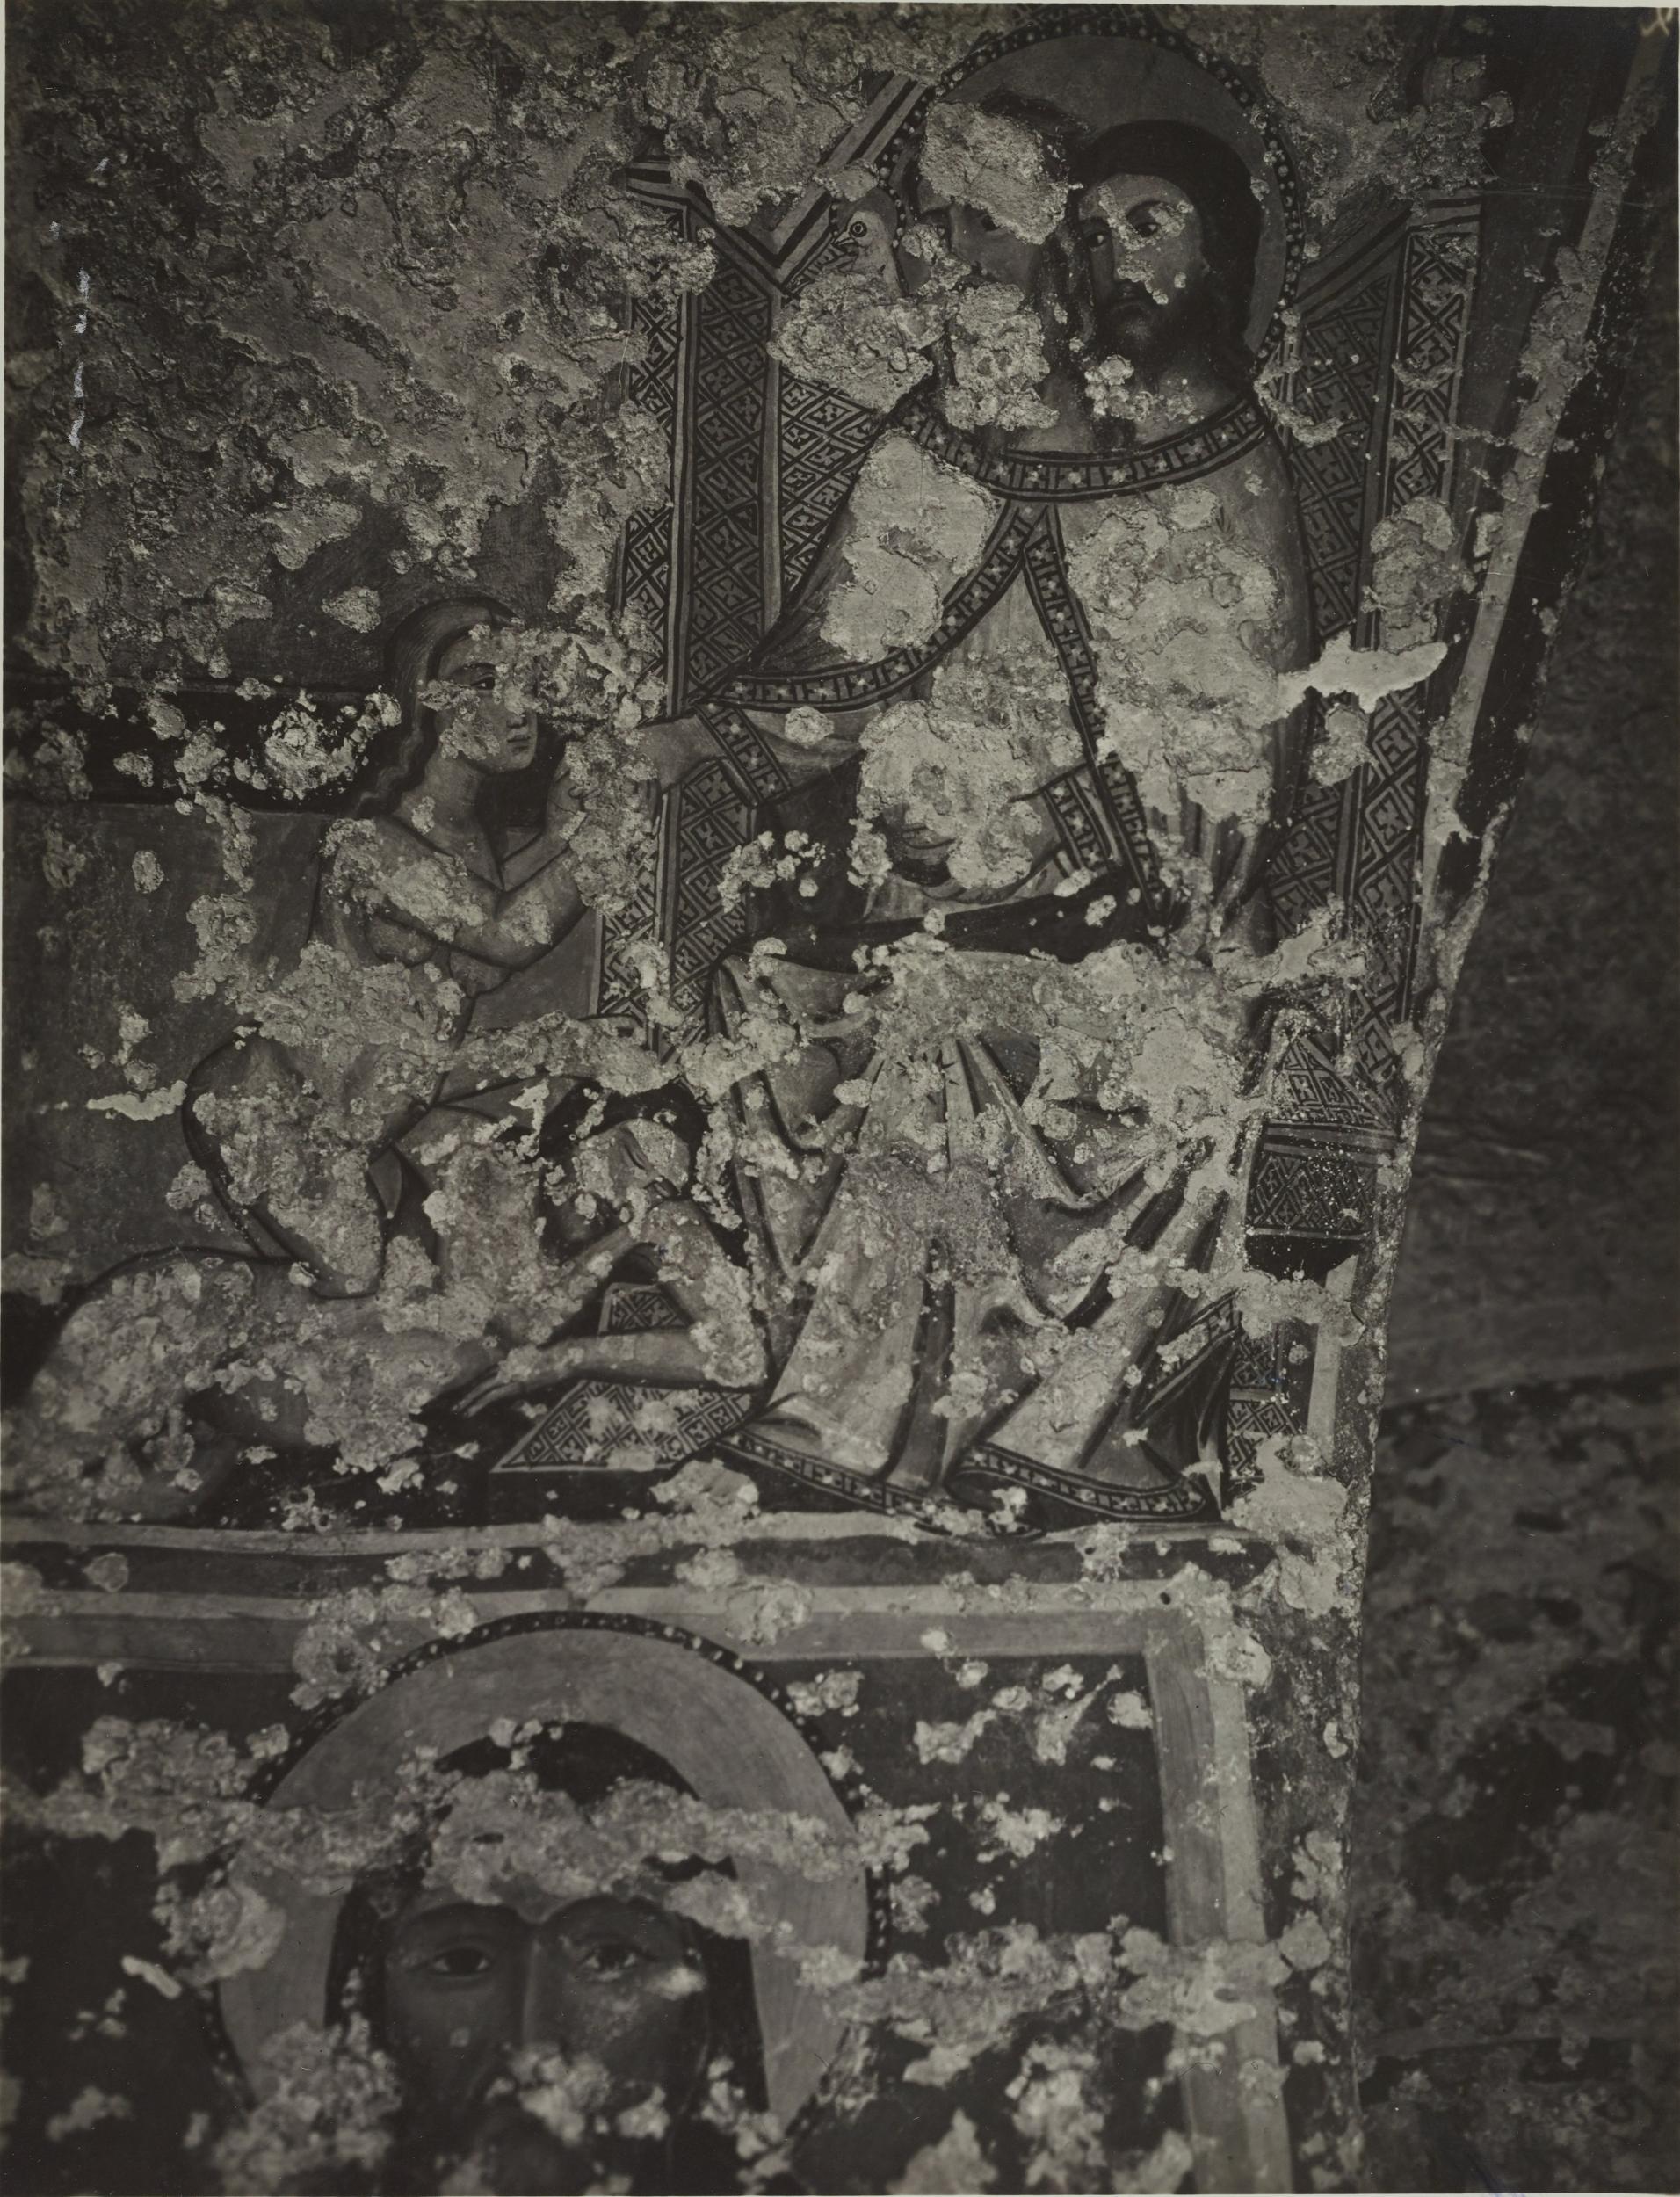 Fotografo non identificato, Andria - Chiesa di S. Croce, cripta, la creazione di Eva, 1926-1950, gelatina ai sali d'argento/carta, MPI131861